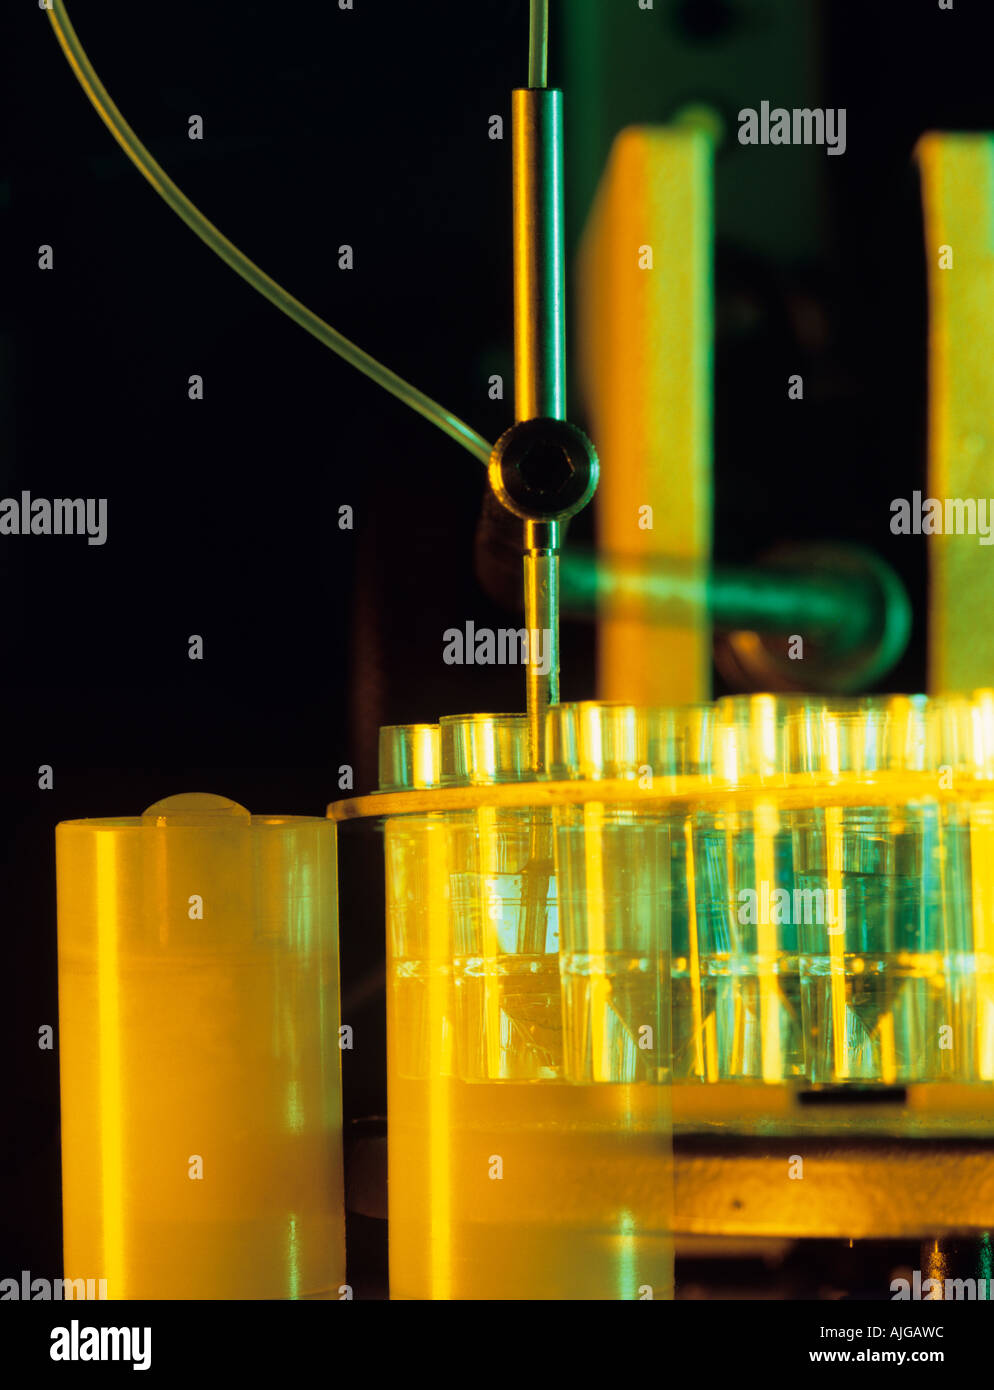 Analysis of chemical liquids using absorption spectrometer equipment, UK, Stock Photo